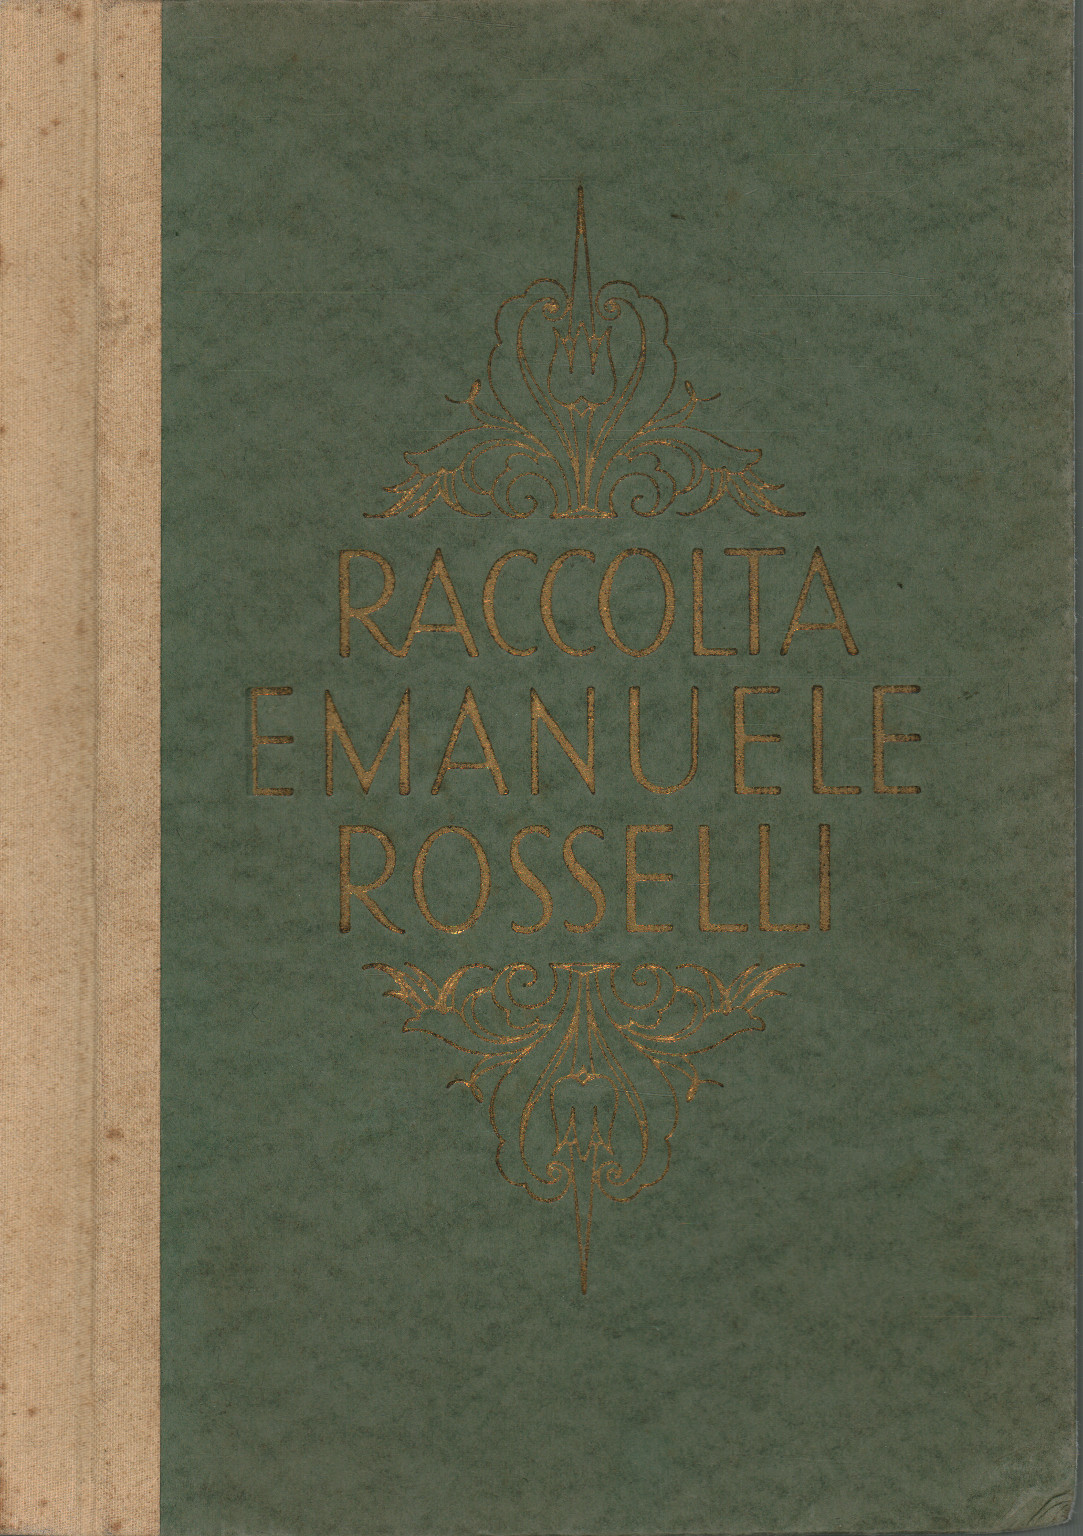 Collection Emanuele Rosselli di Viareggio, s.a.